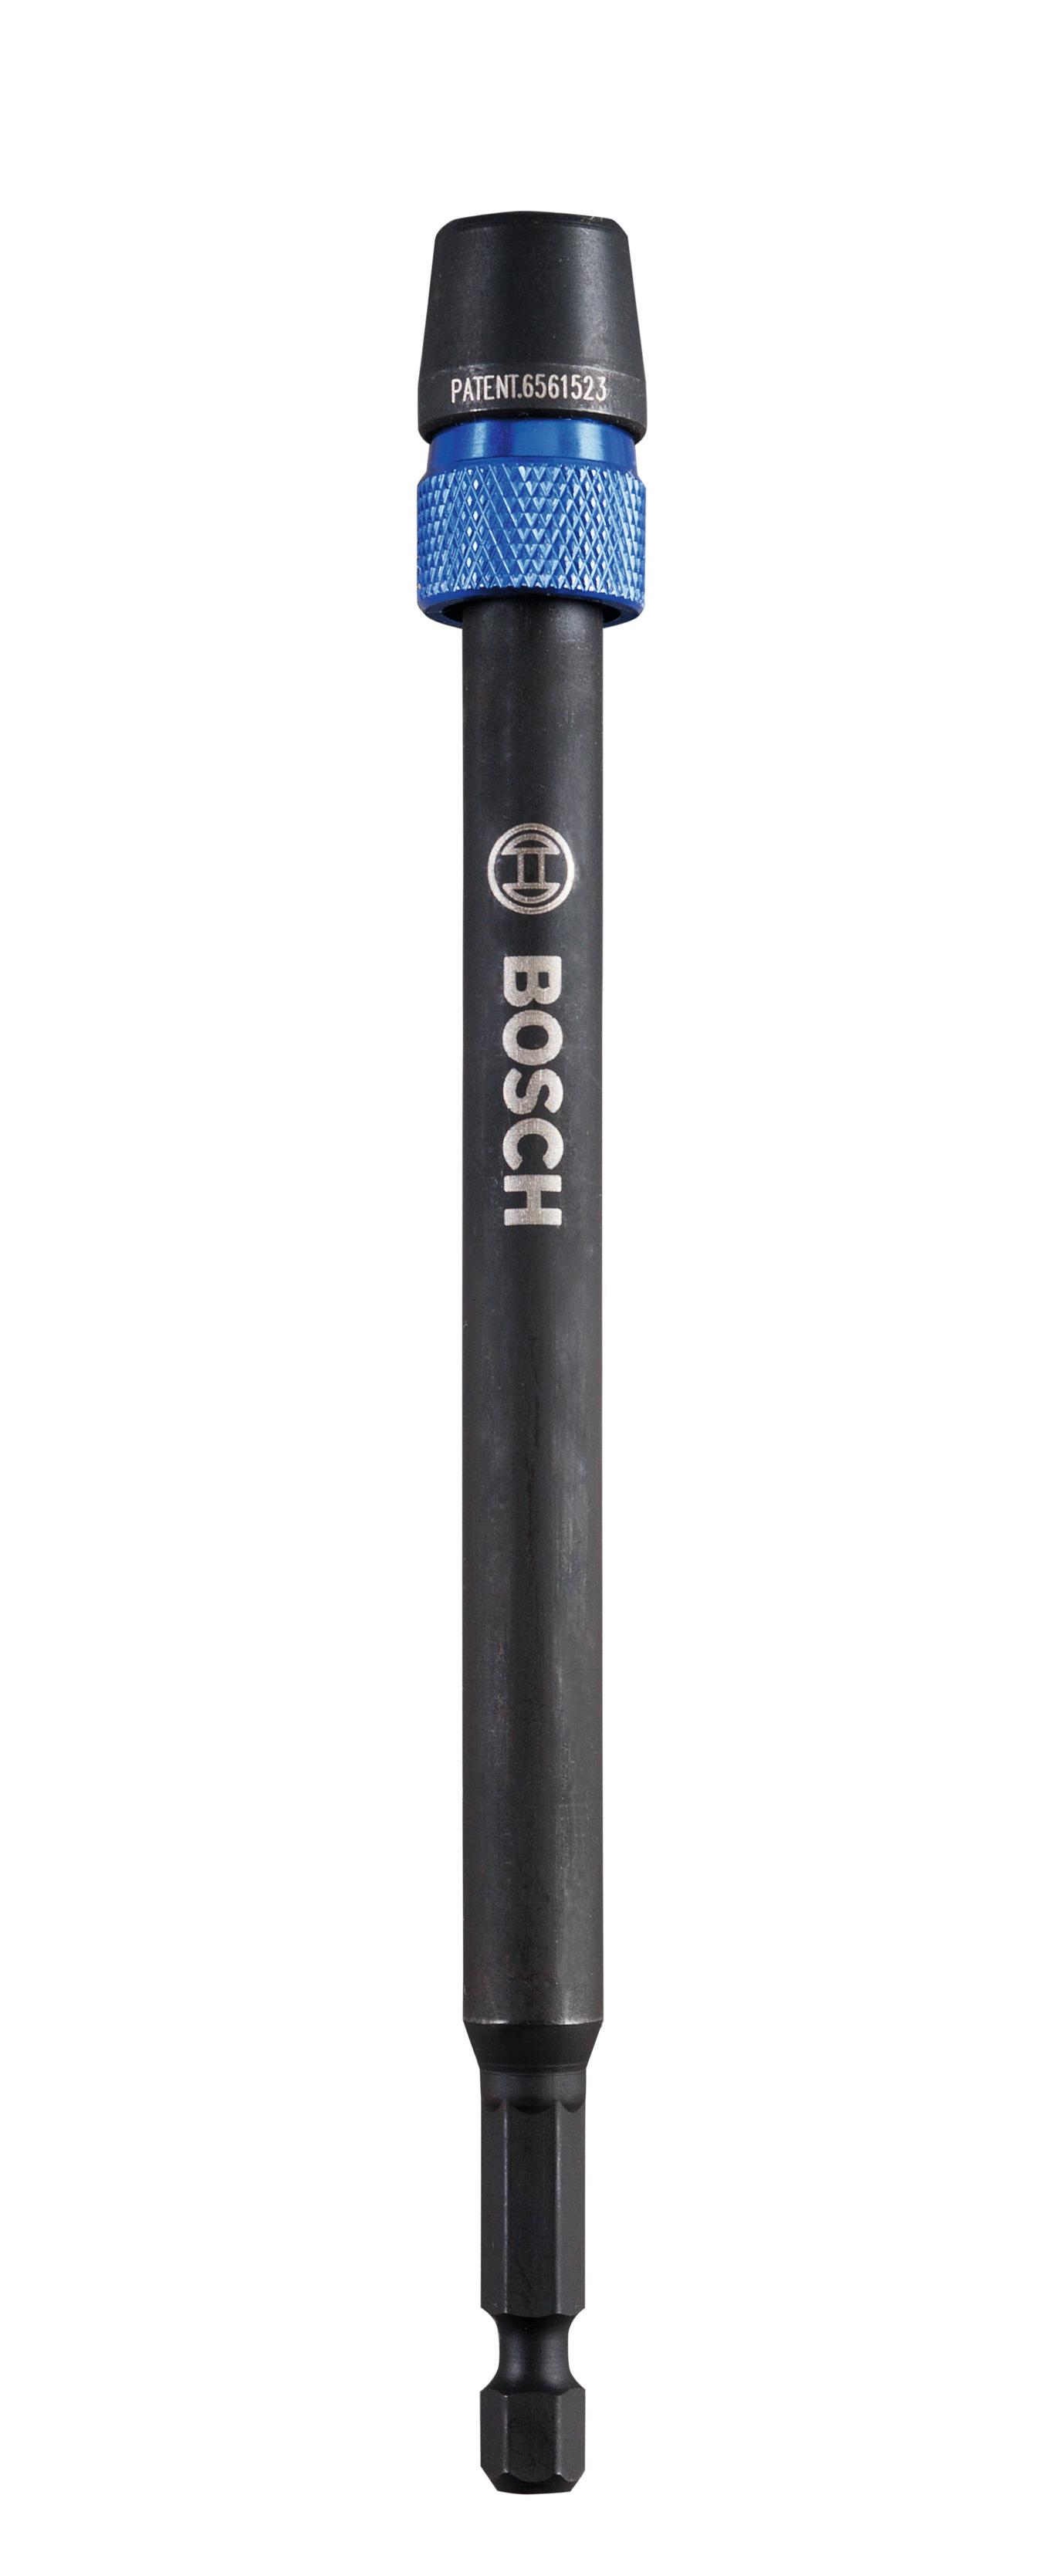 Selected image for Bosch produžetak za brzo menjanje 1/4" šestostranog prihvata za pljosnate burgije za glodanje Self Cut Speed 305 mm - 2608587521